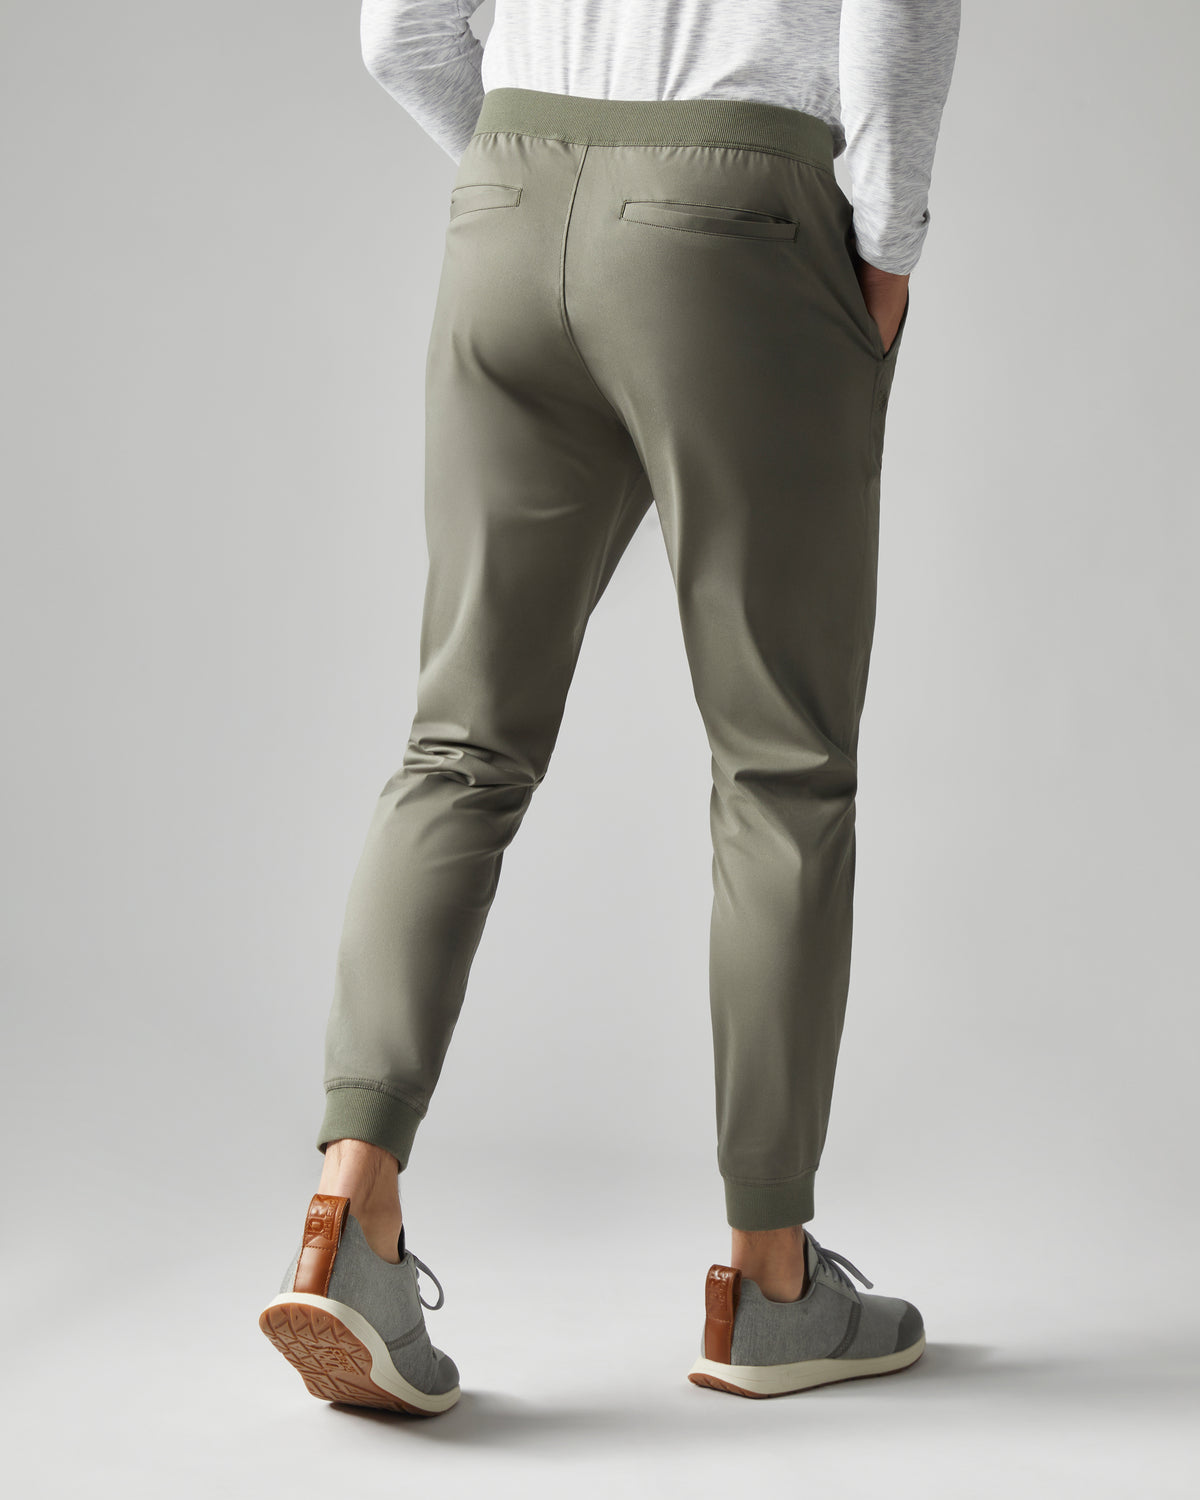 Rhone Men's Commuter Pant Classic-Fit, Premium FlexKnit Stretch